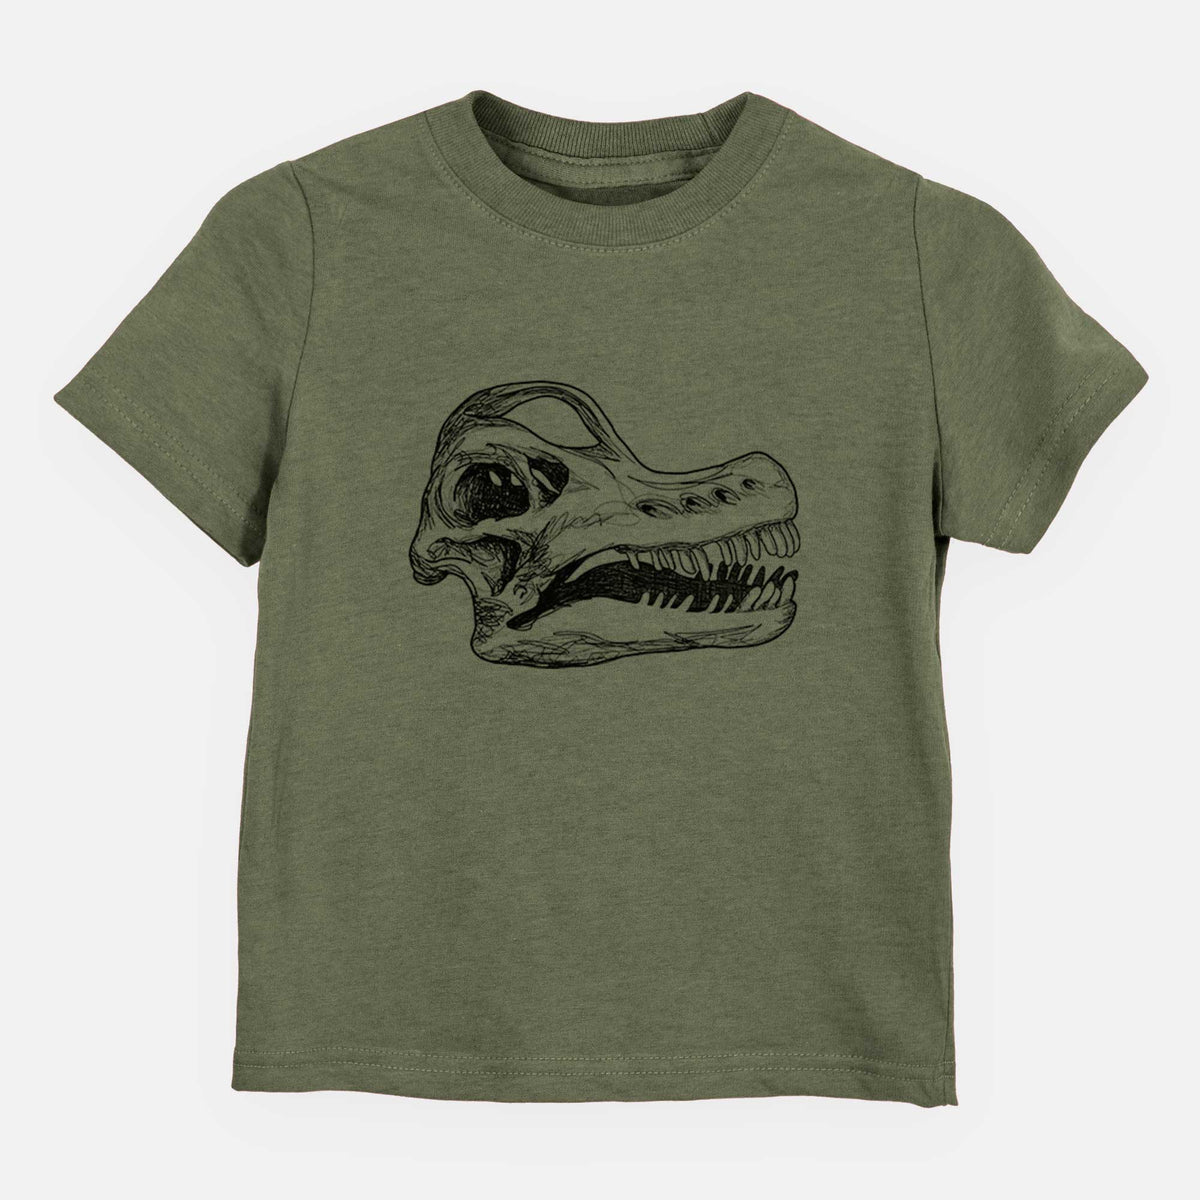 Brachiosaurus Skull - Kids Shirt